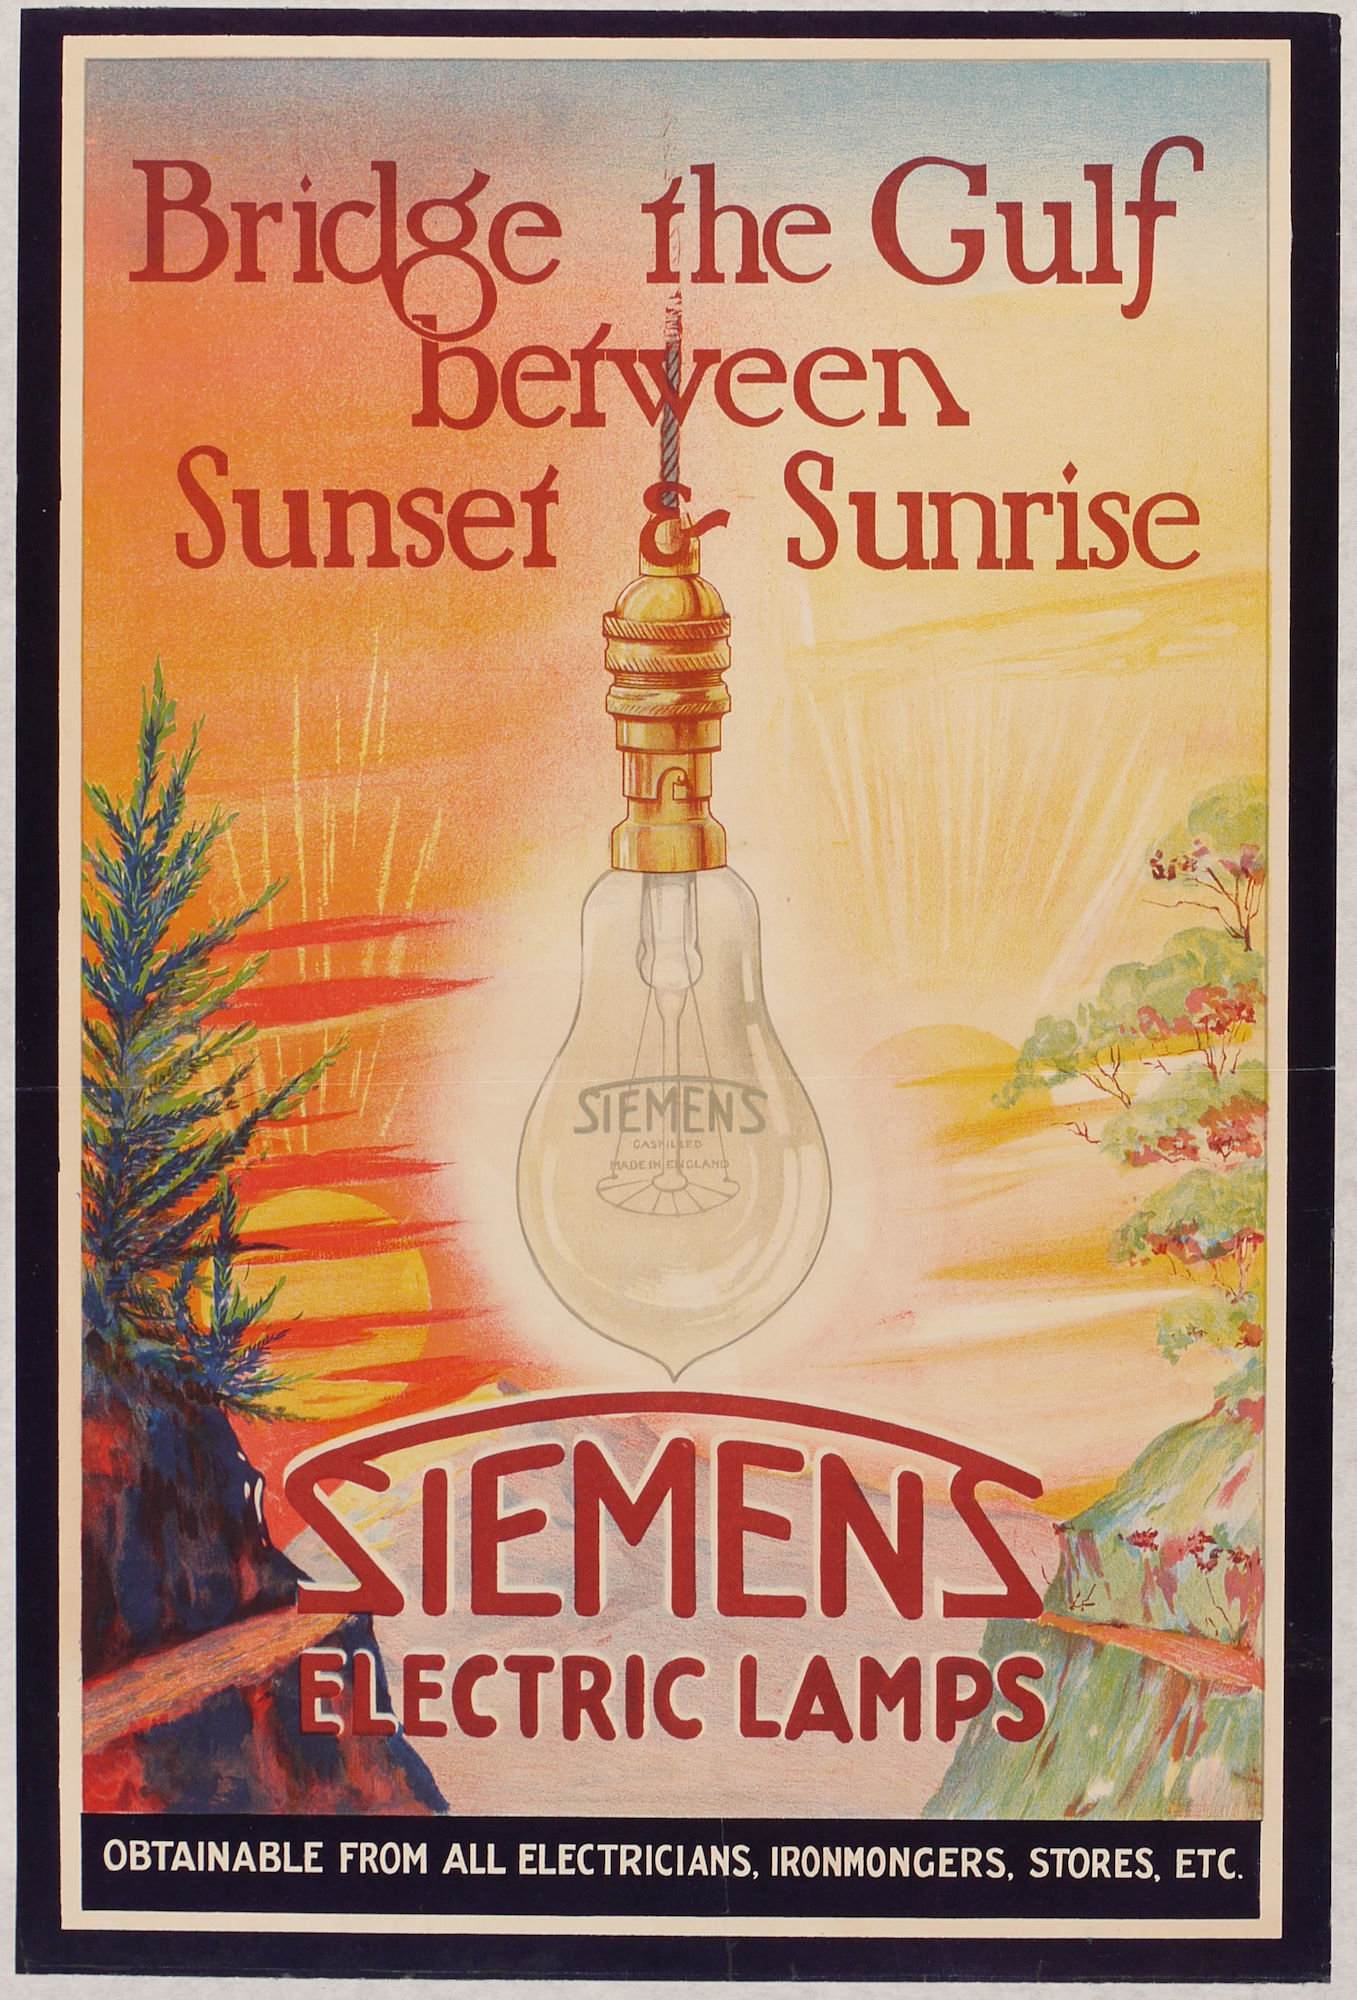 Publicitaire affiche voor gloeilampen van het merk SIEMENS